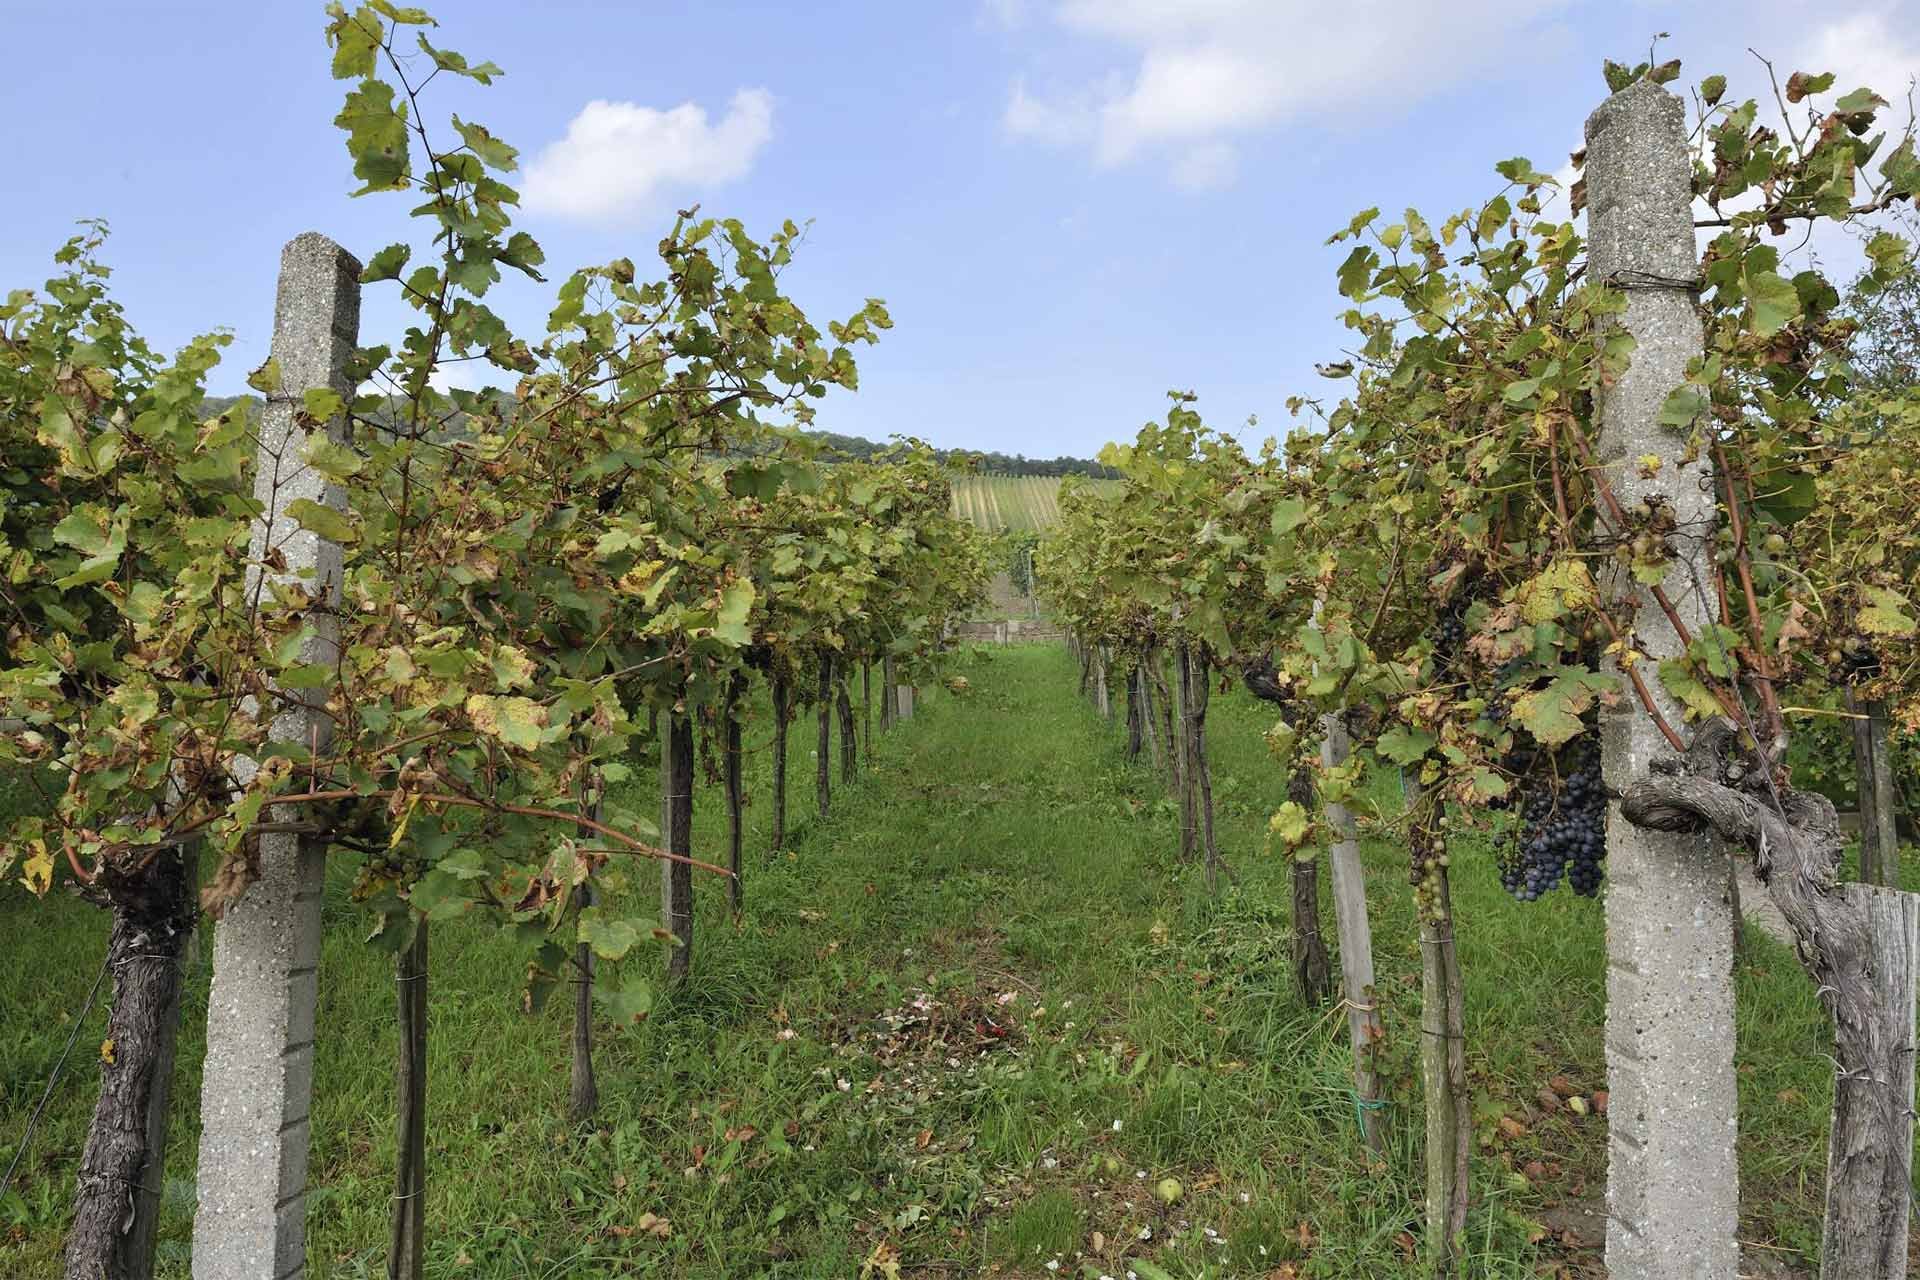 Am Samstag und Sonntag kann man sich durch den Wein der Wiener Reben kosten.